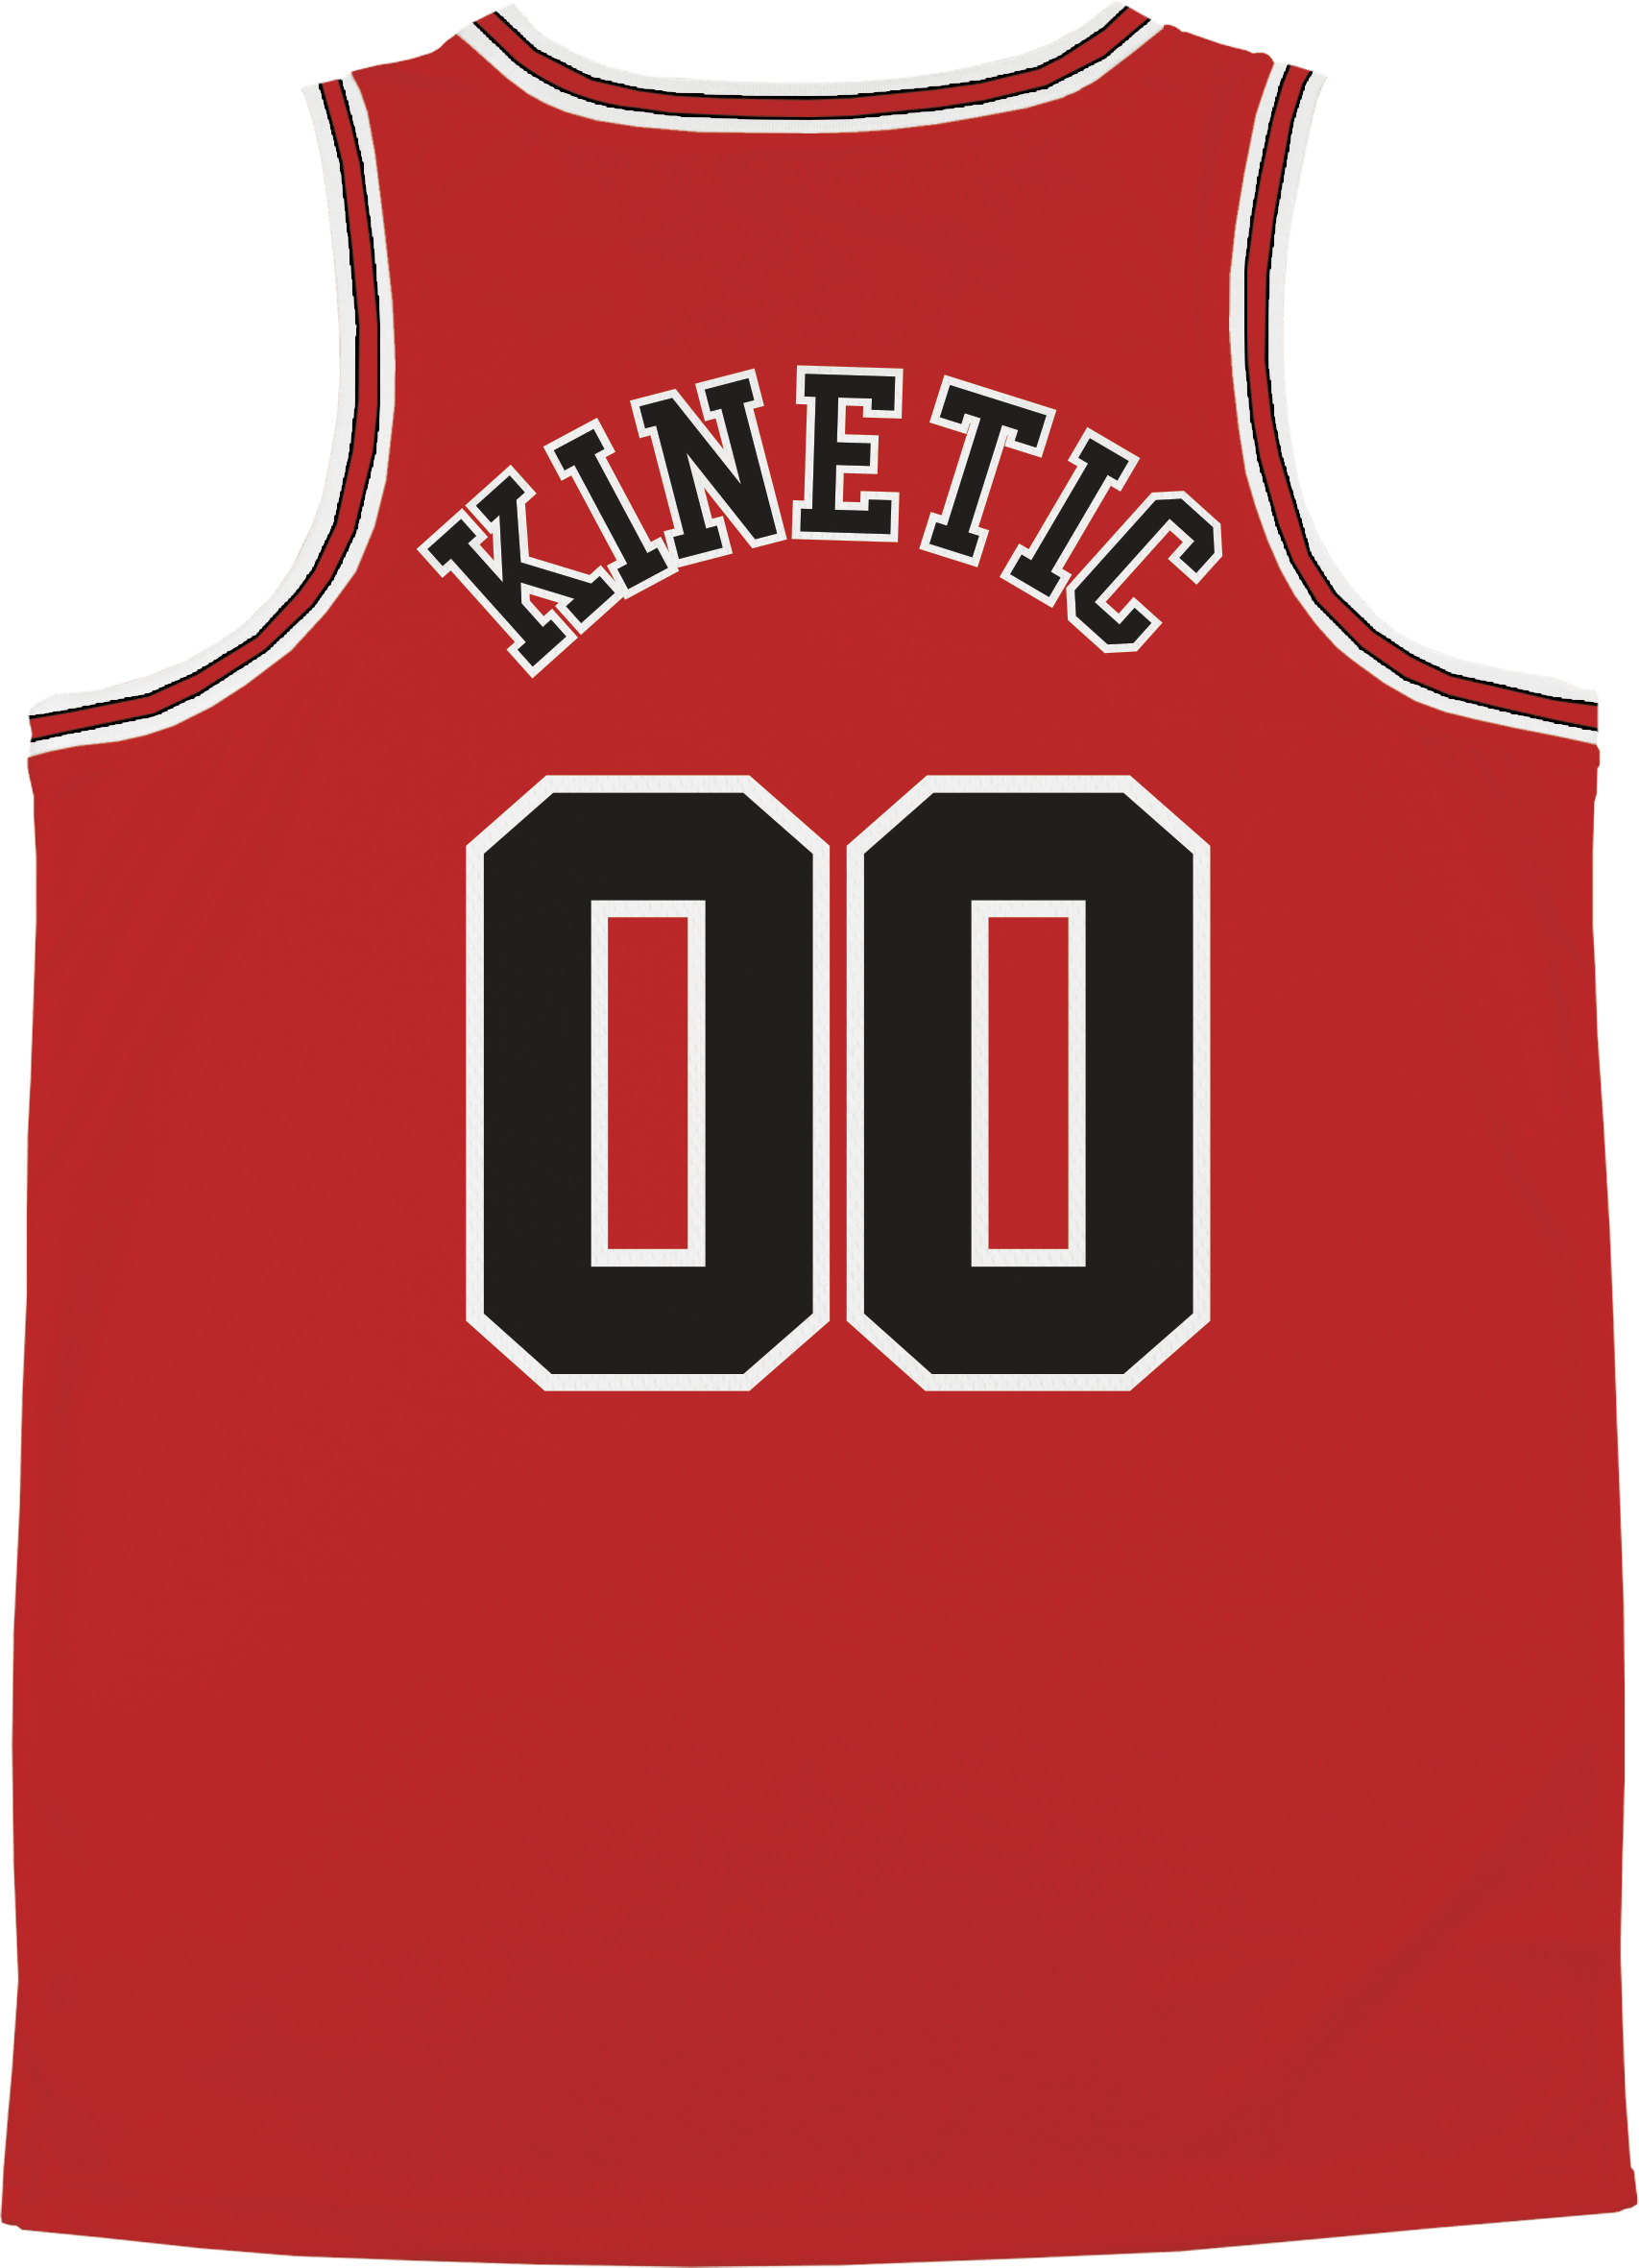 Sigma Phi Epsilon - Big Red Basketball Jersey Premium Basketball Kinetic Society LLC 